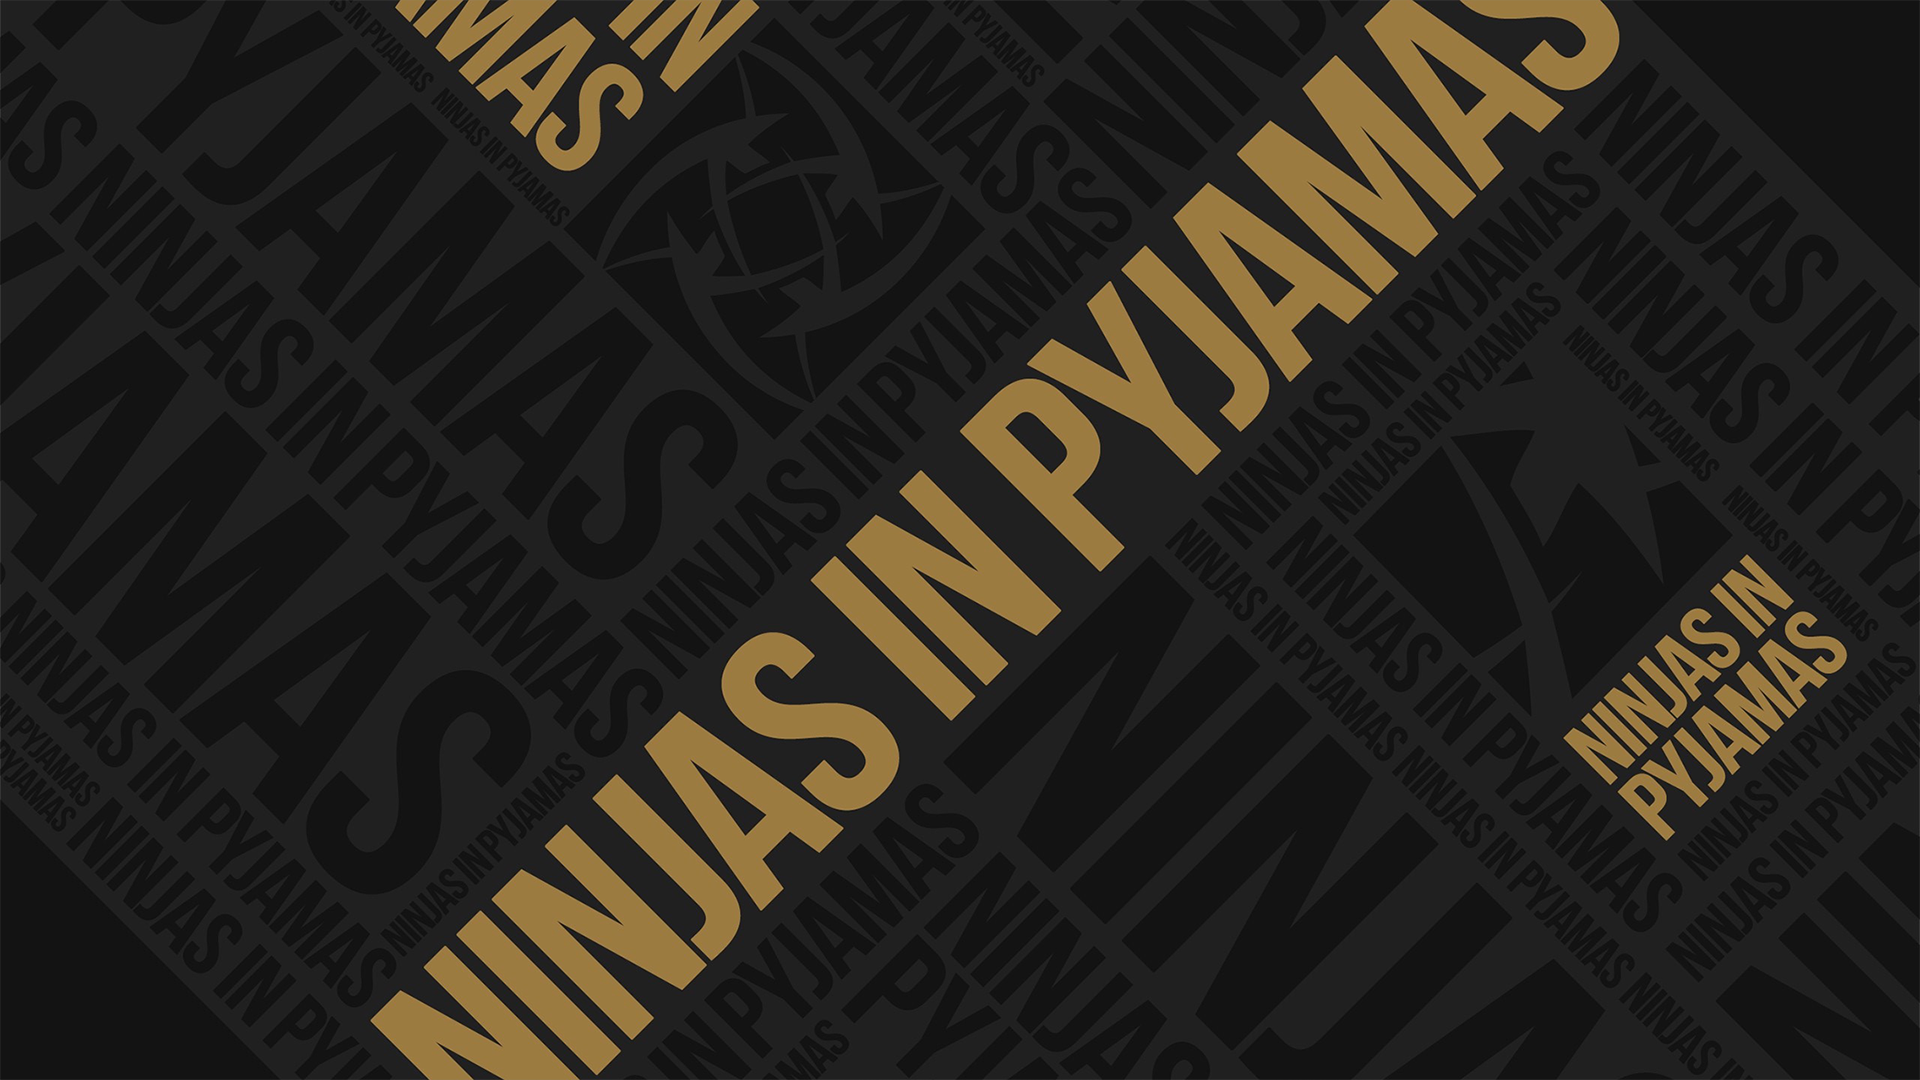 Wallpaper Of The Week - Ninjas In Pyjamas Cs Go Hd , HD Wallpaper & Backgrounds